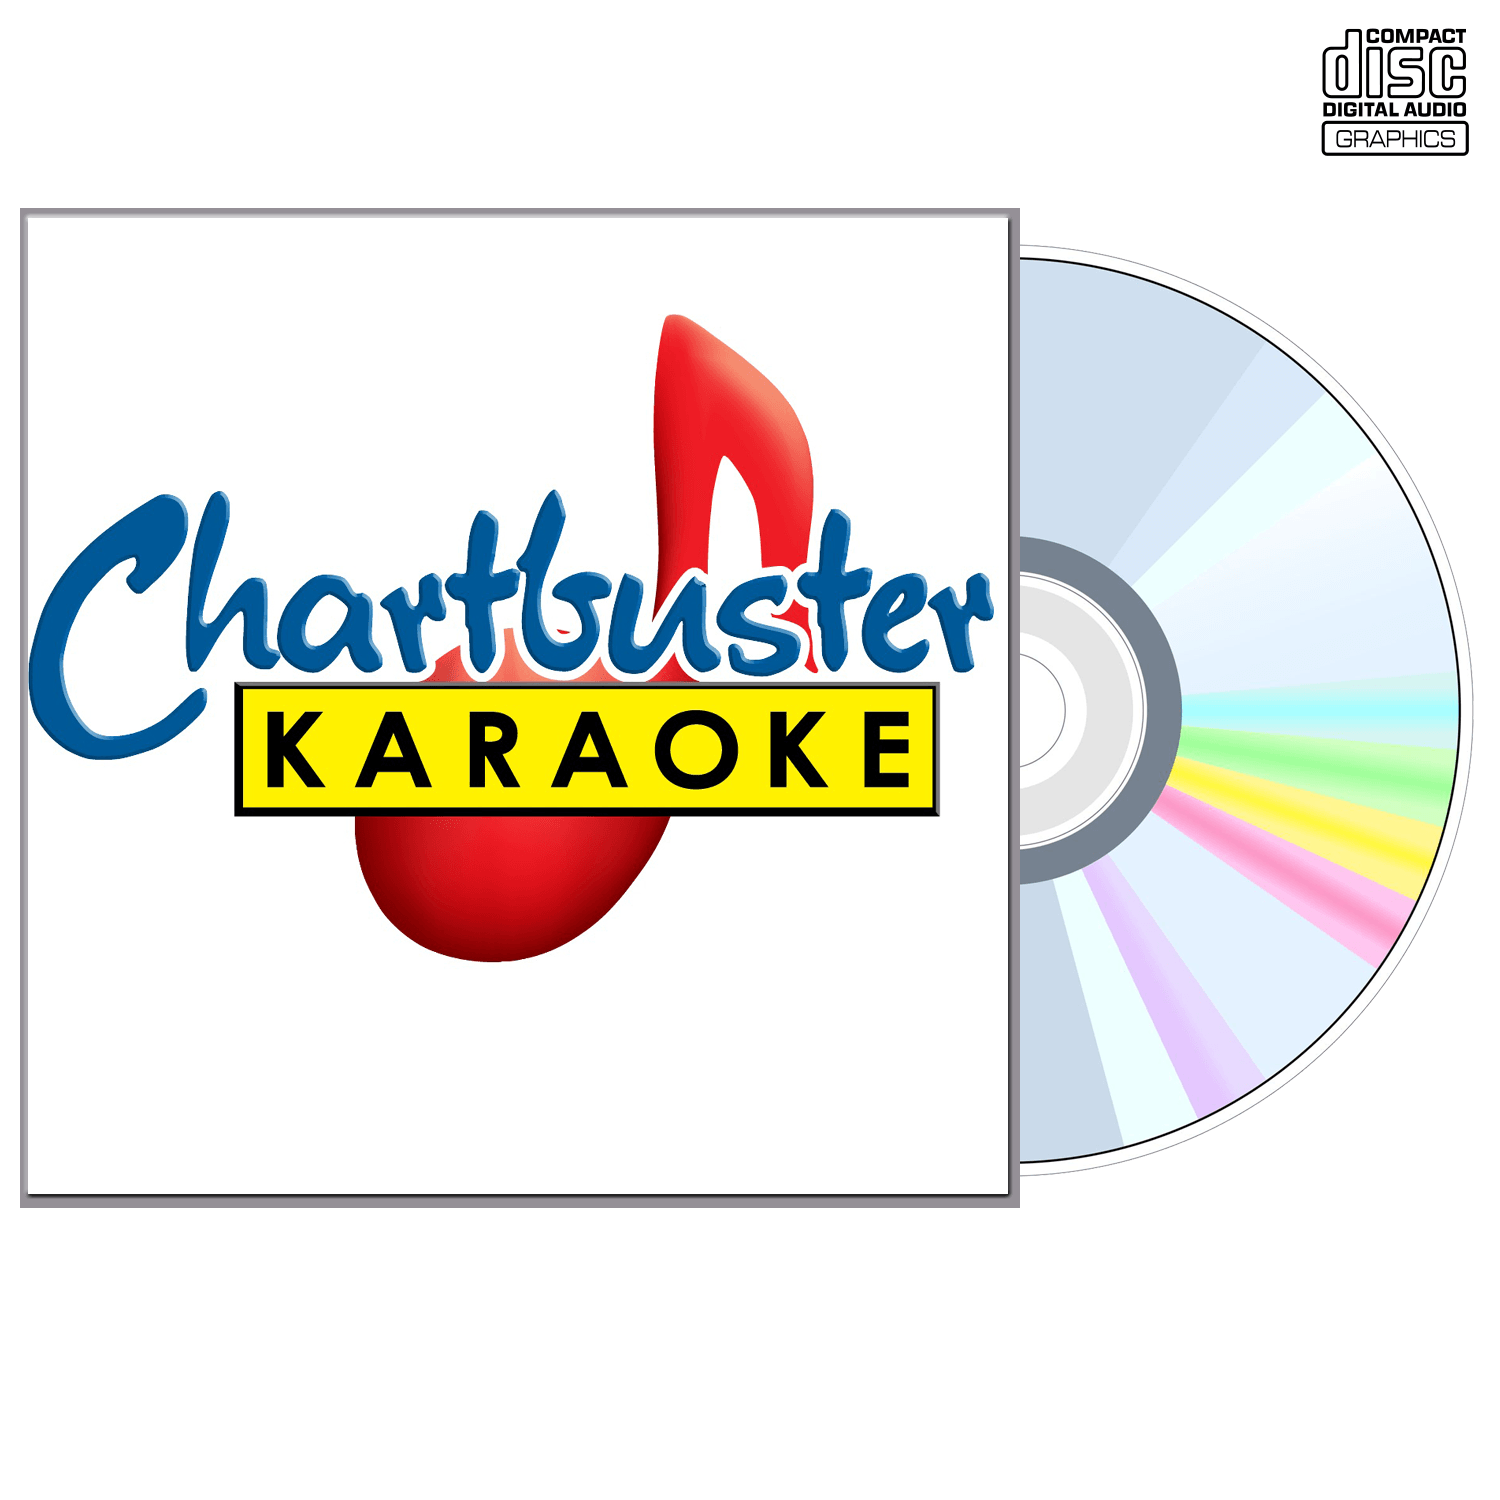 James Otto - CD+G - Chartbuster Karaoke - Karaoke Home Entertainment